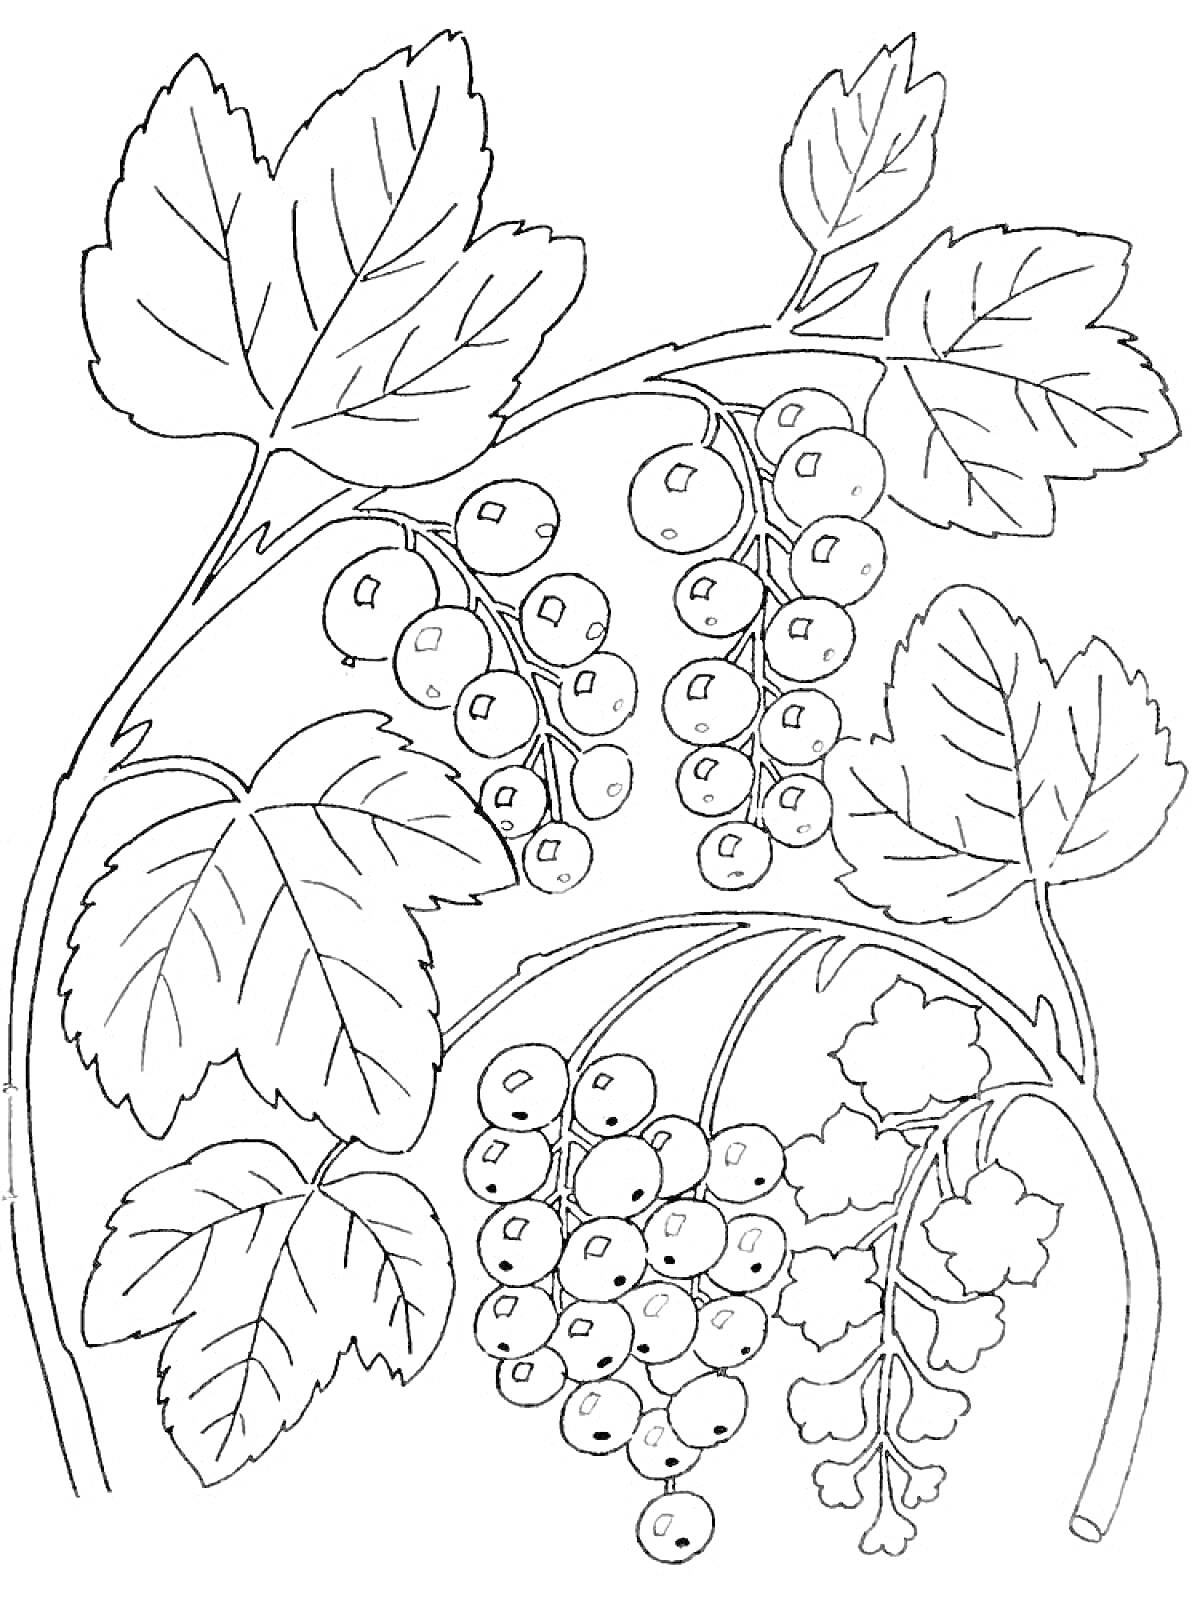 РаскраскаВетви смородины с ягодами и листьями